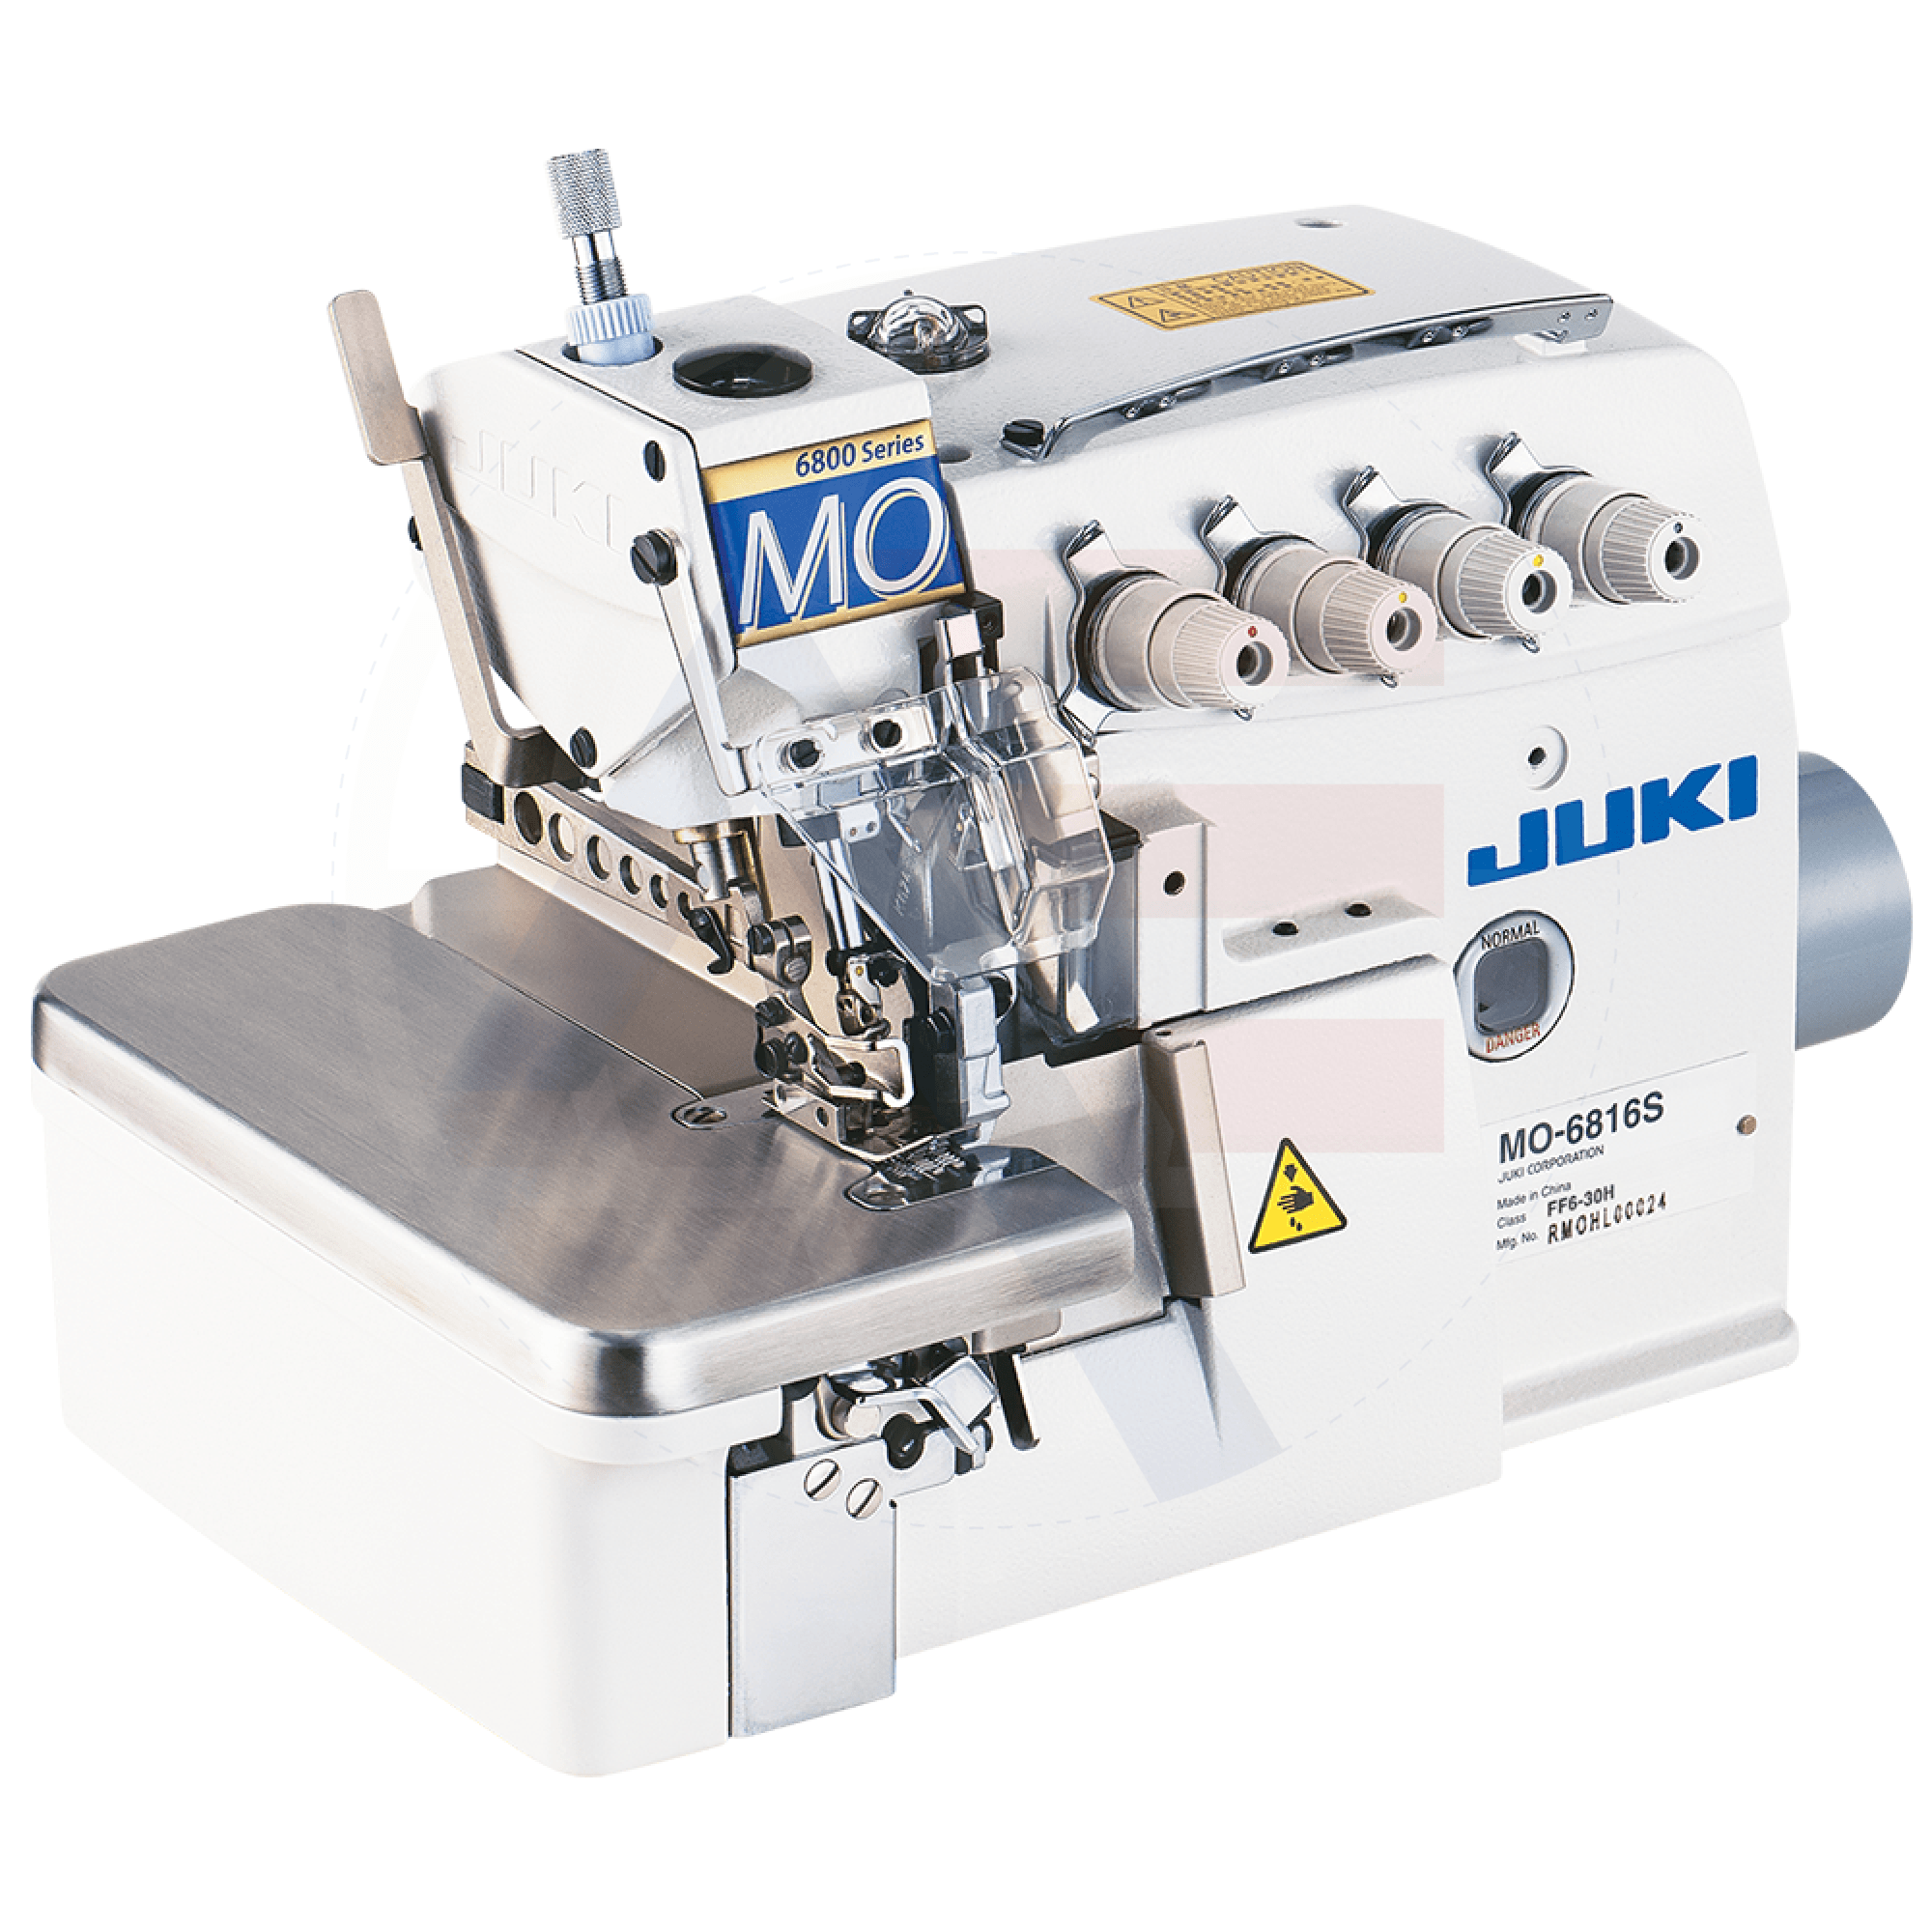 Juki Mo-6804S 3-Thread Overlock Machine Sewing Machines